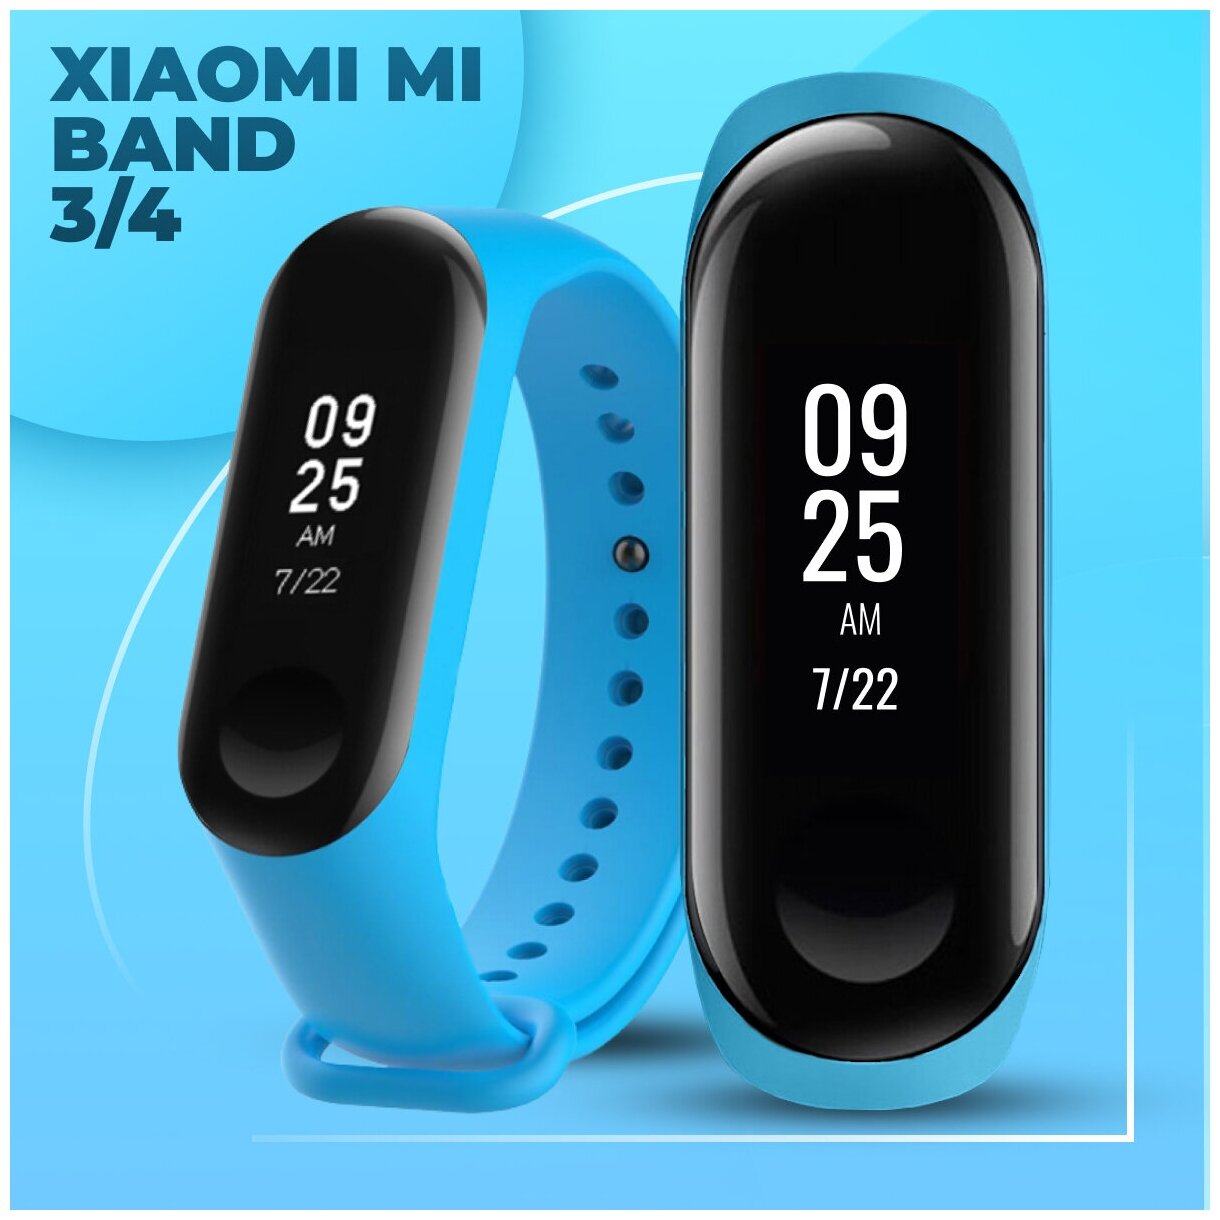 LS / Силиконовый ремешок для фитнес браслета Xiaomi Mi Band 3 и Mi Band 4 / Сменный браслет для смарт часов Сяоми Ми Бэнд 3 и Ми Бэнд 4 (Голубой)